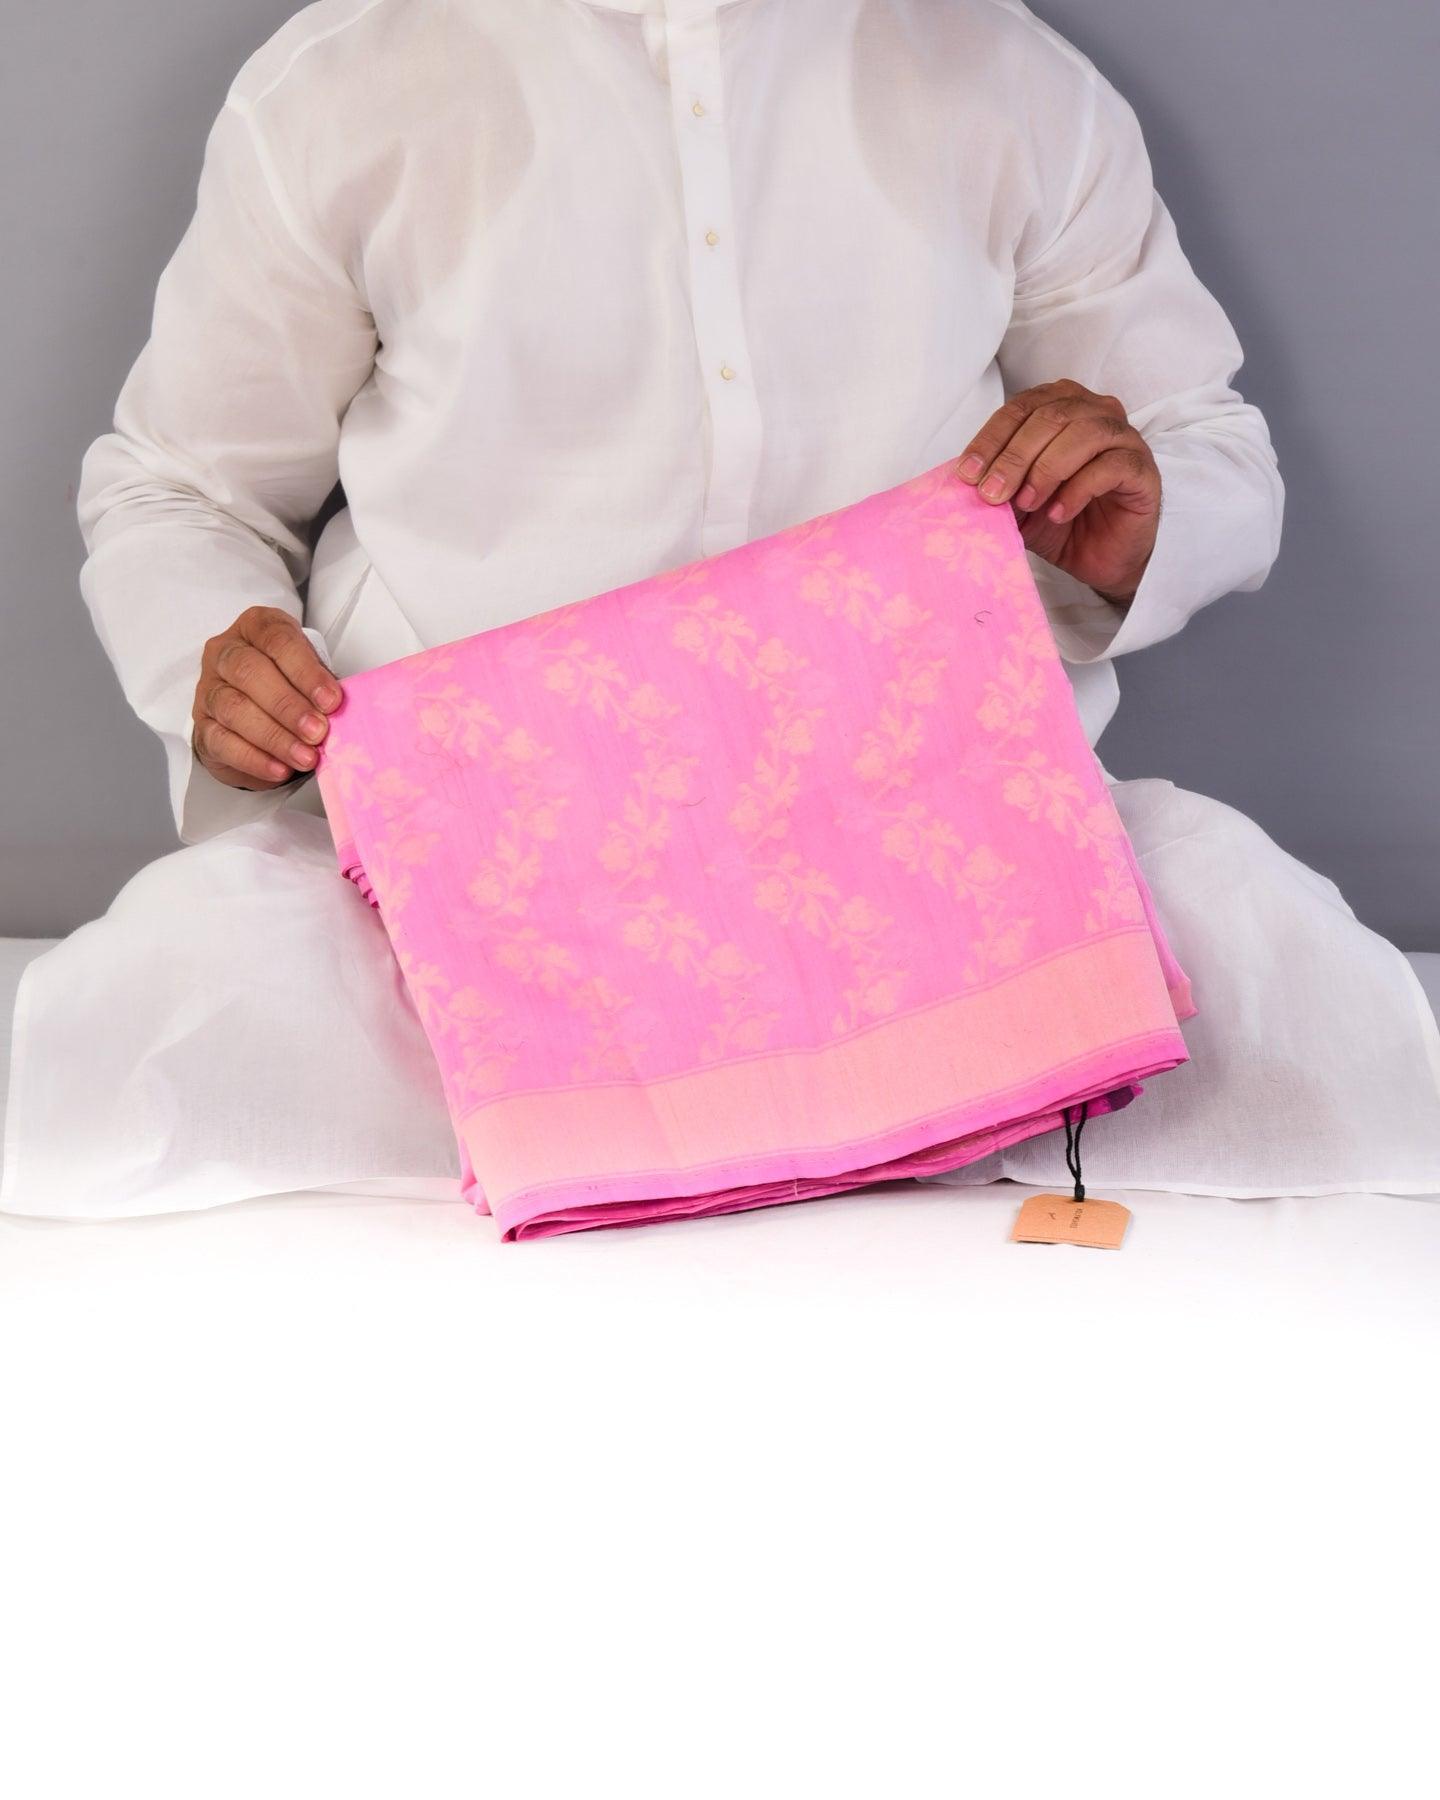 Pink Banarasi Resham Leheriya Cutwork Brocade Handwoven Cotton Silk Saree - By HolyWeaves, Benares